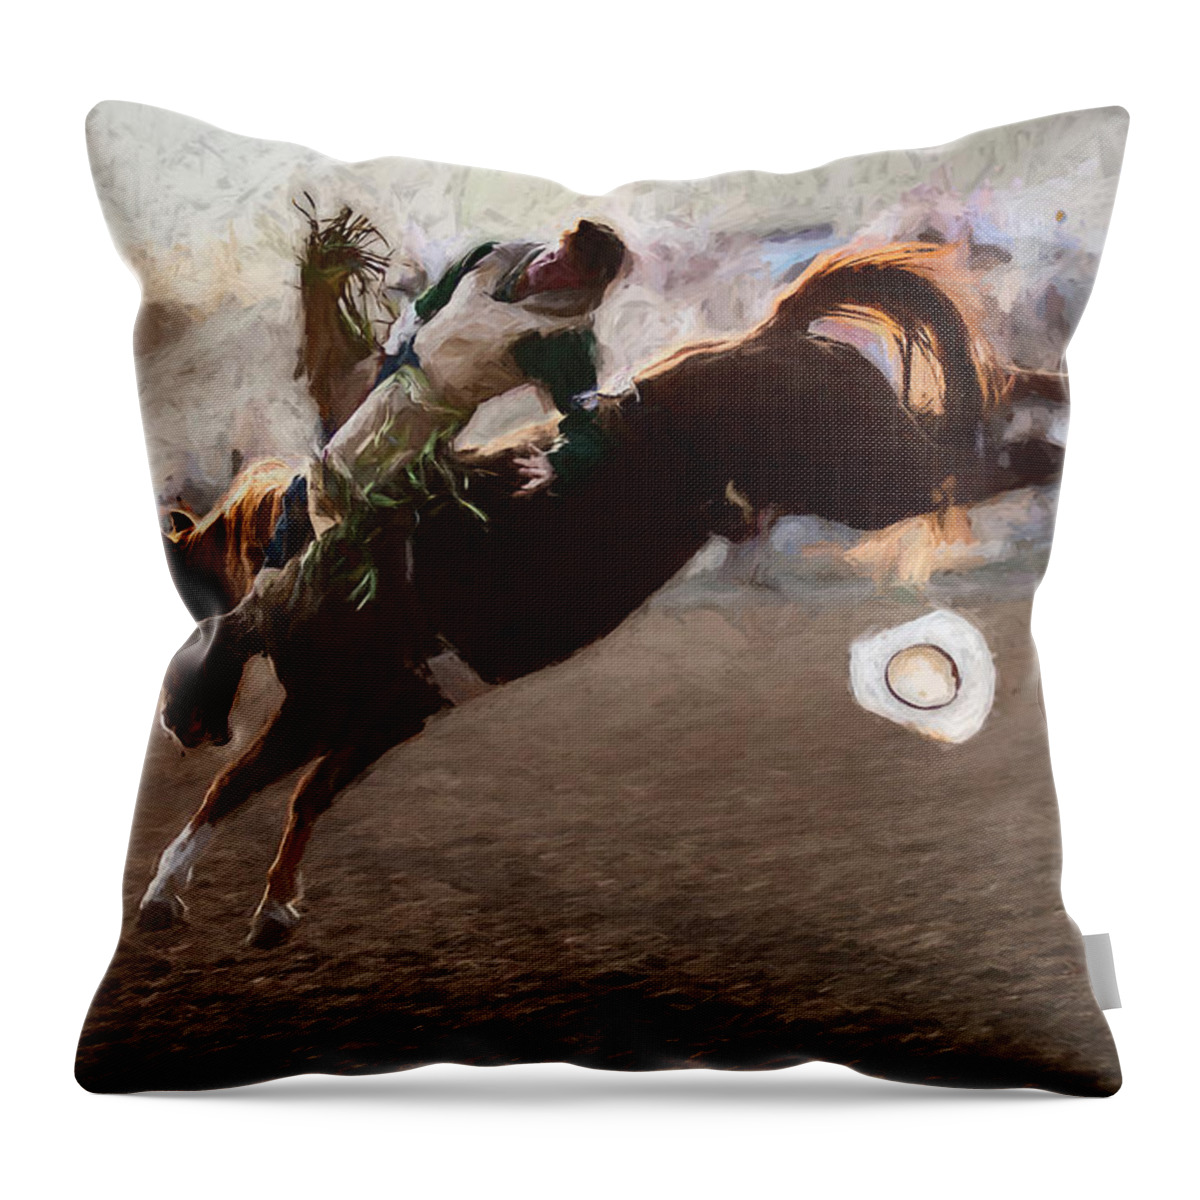 2010 Throw Pillow featuring the digital art Bareback Rider - 3 by Bruce Bonnett